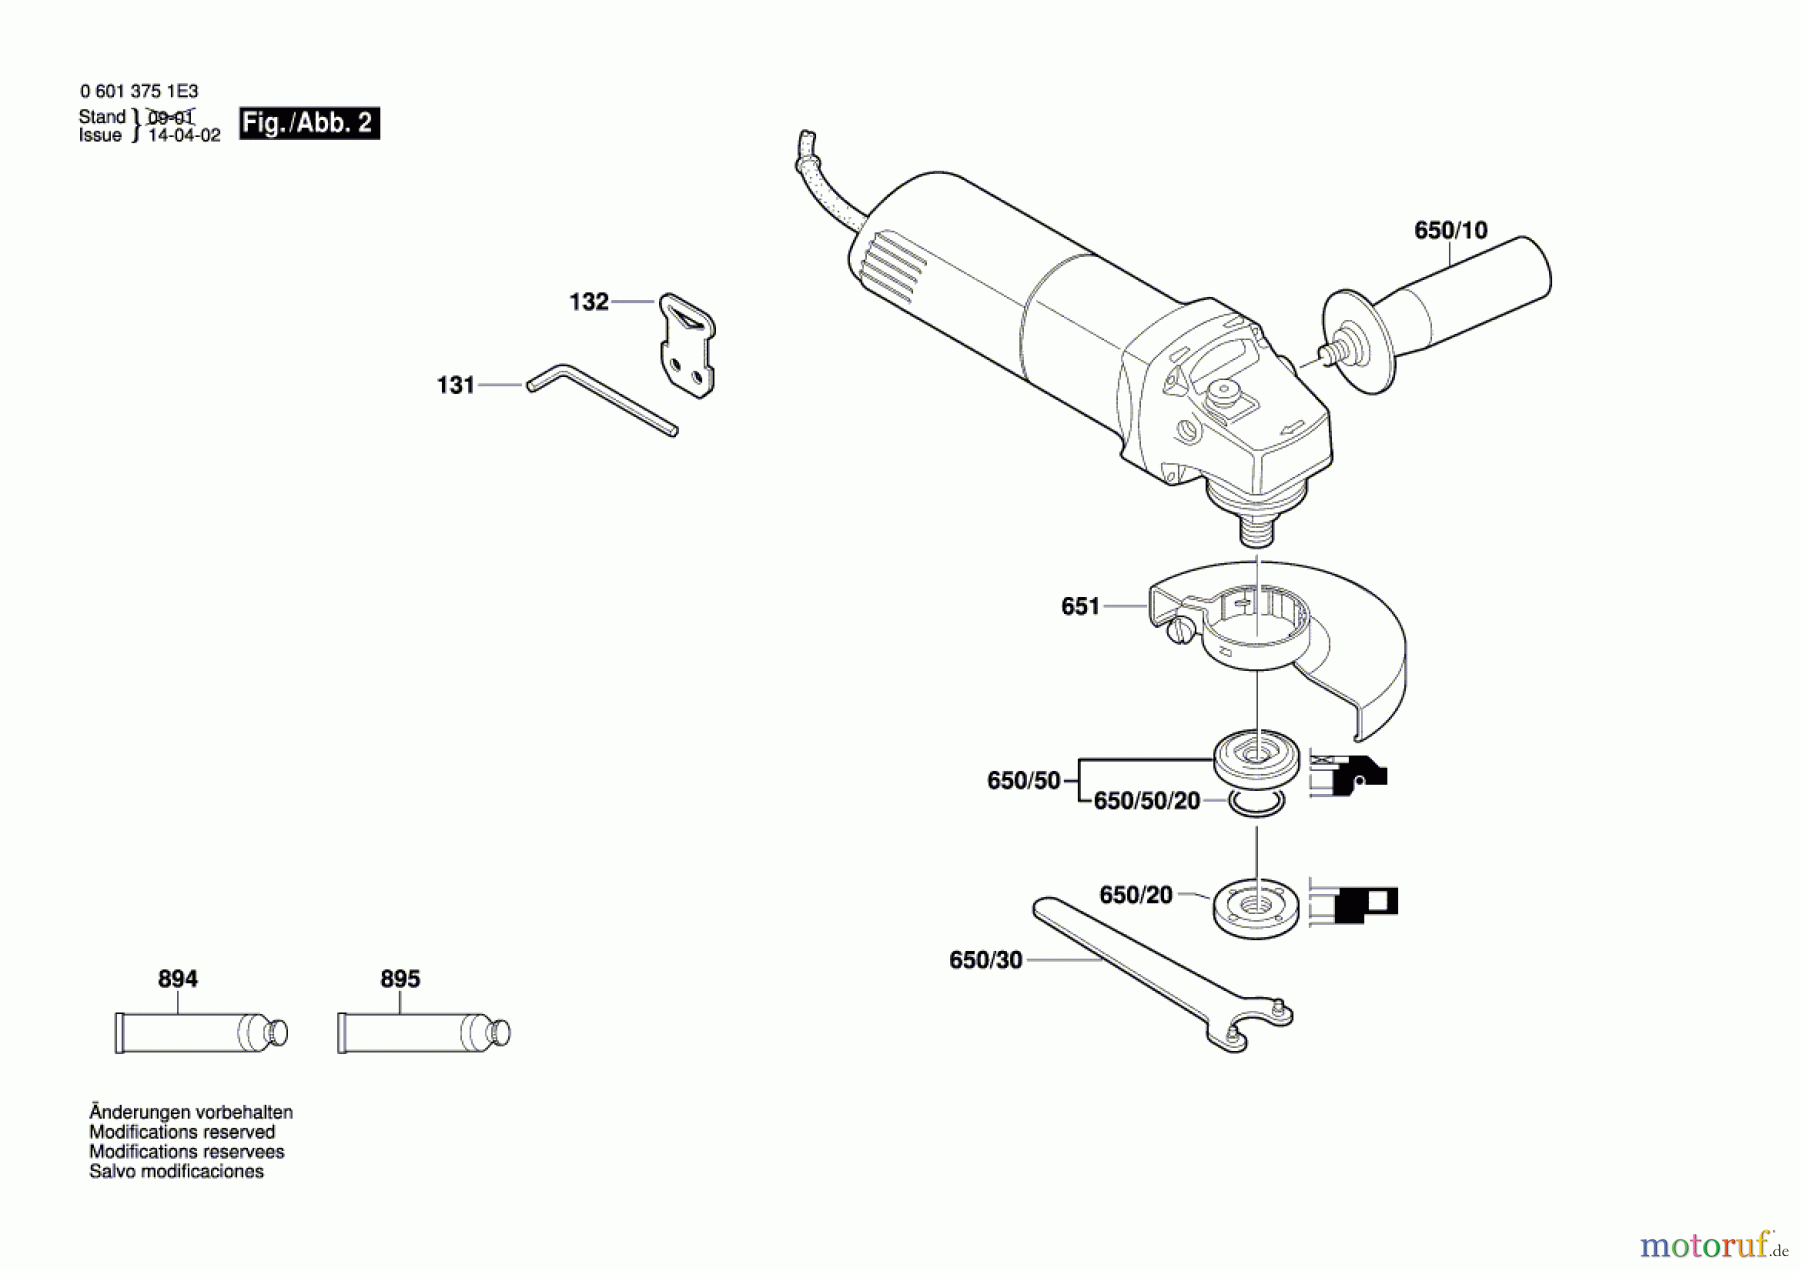  Bosch Werkzeug Winkelschleifer GWS 6-115 Seite 2